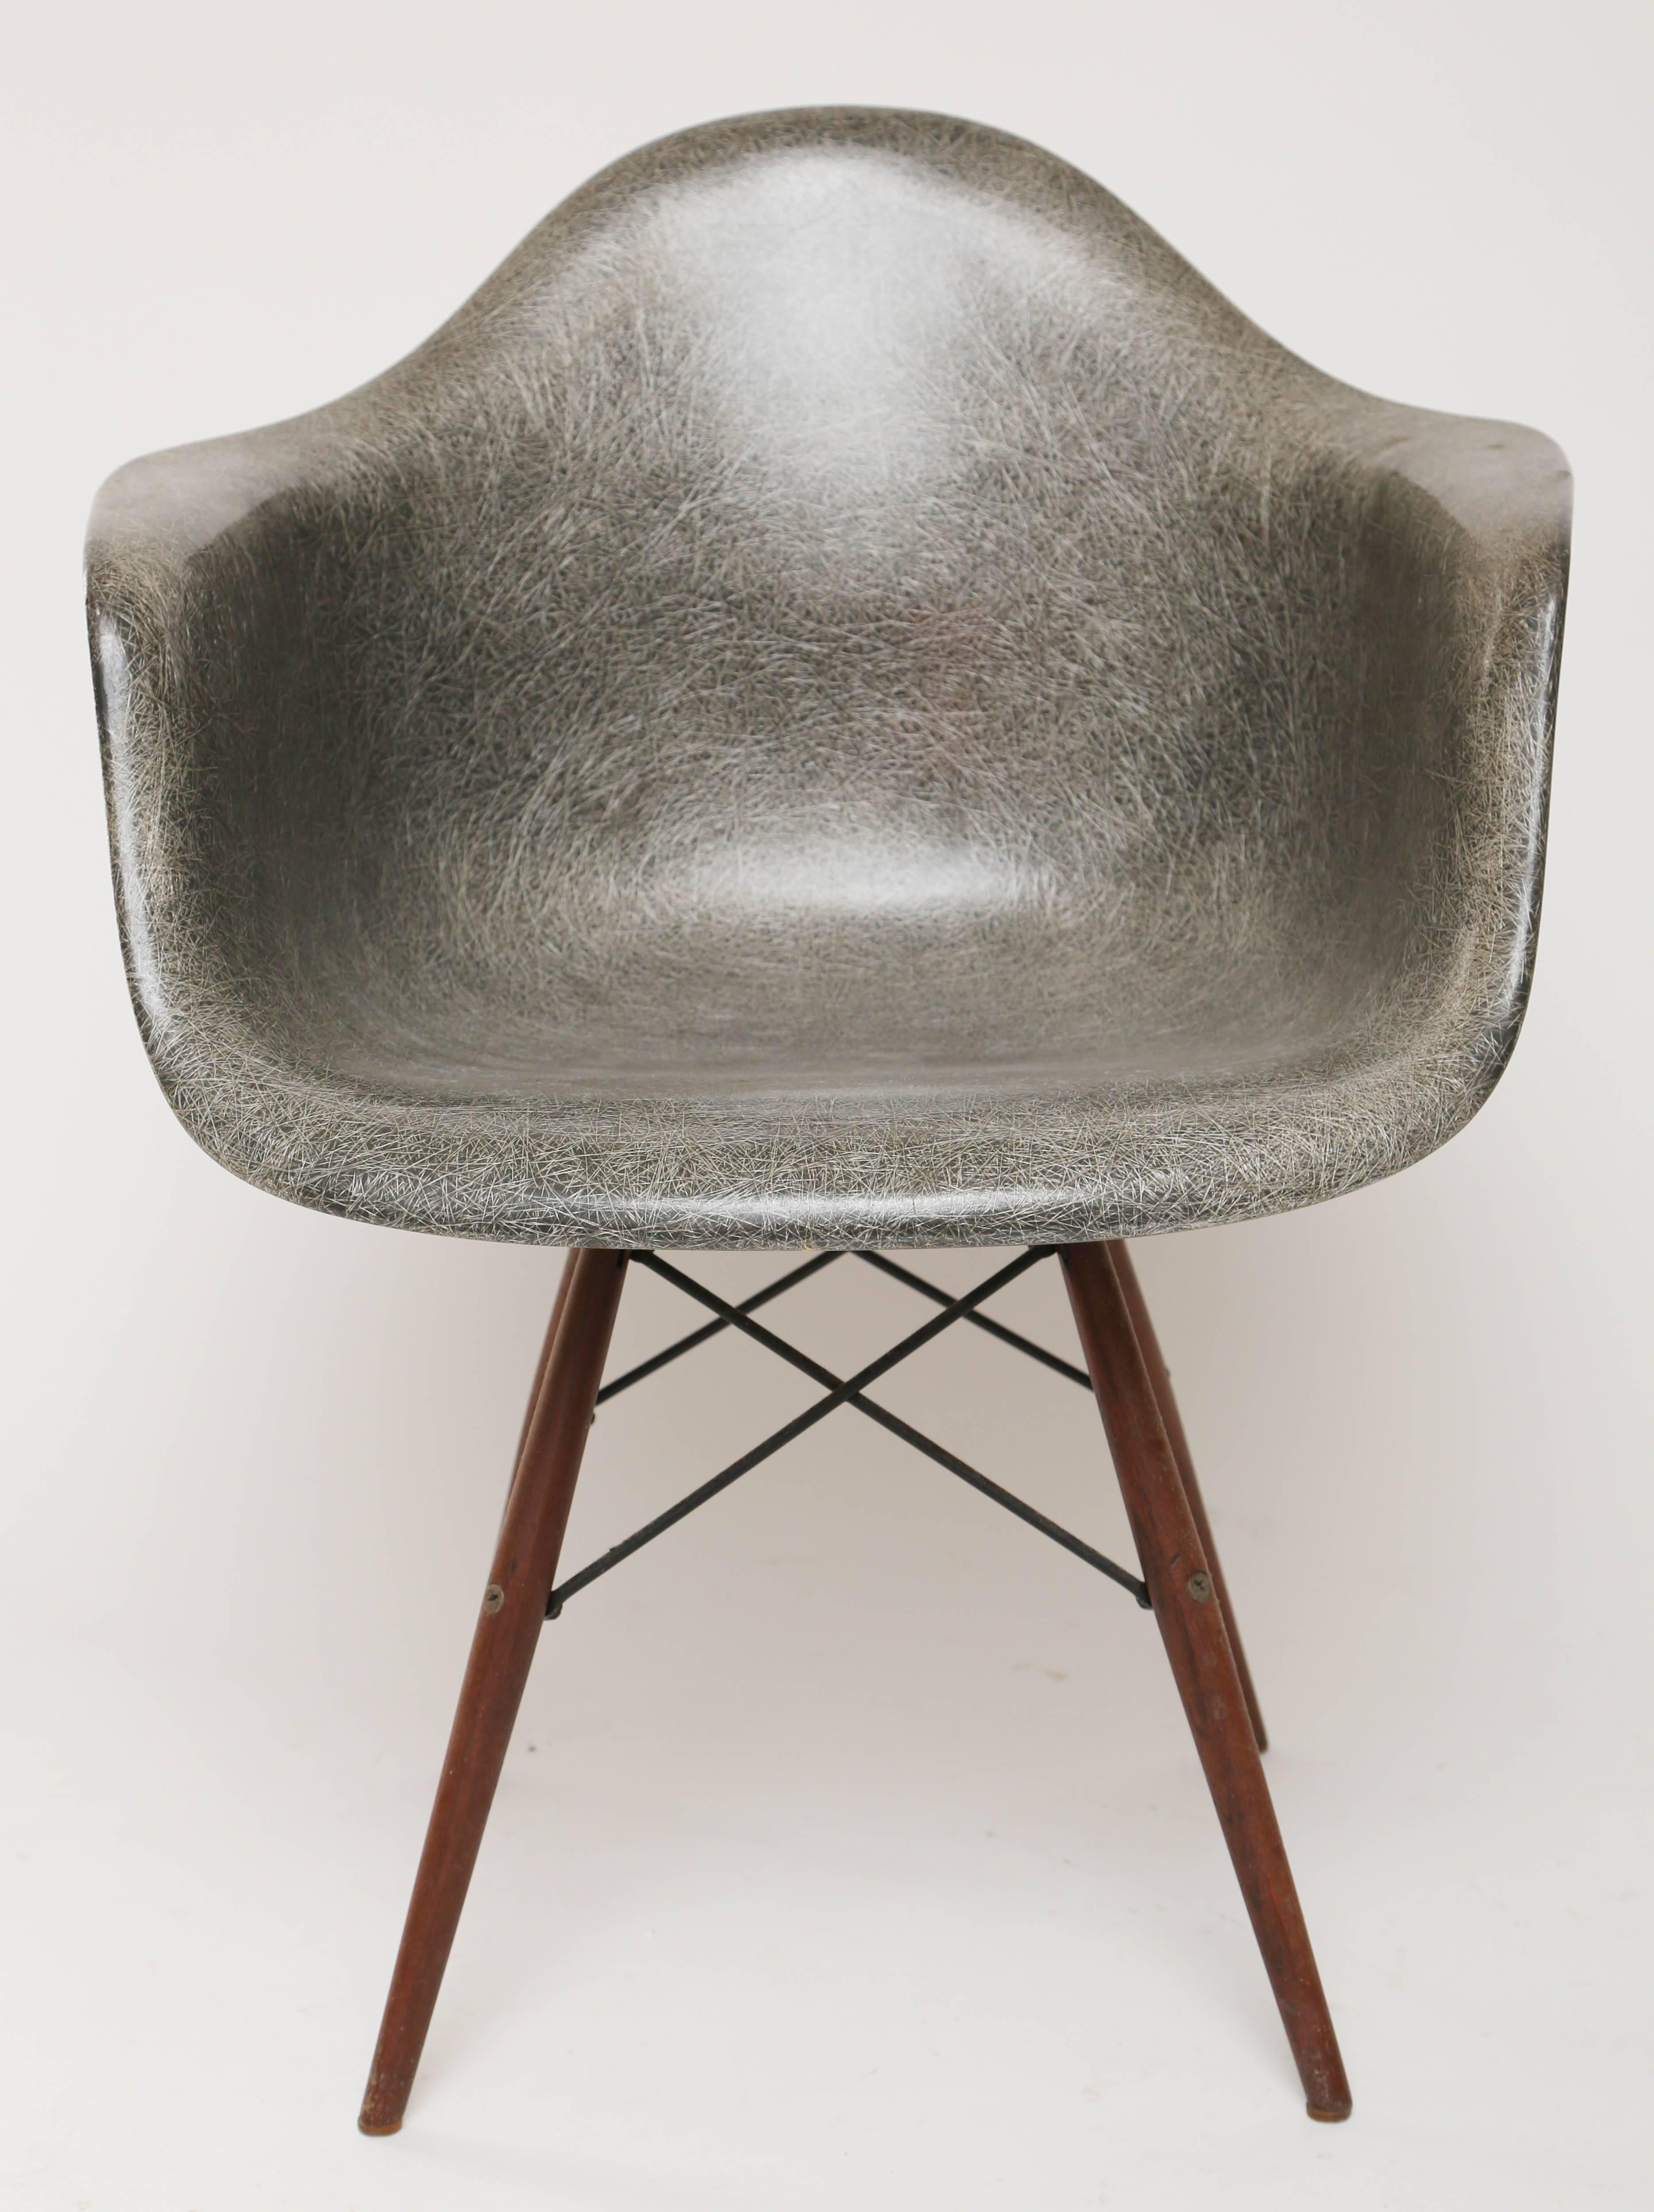 DAW chair manufactured by Herman Miller-Zenith plastics.